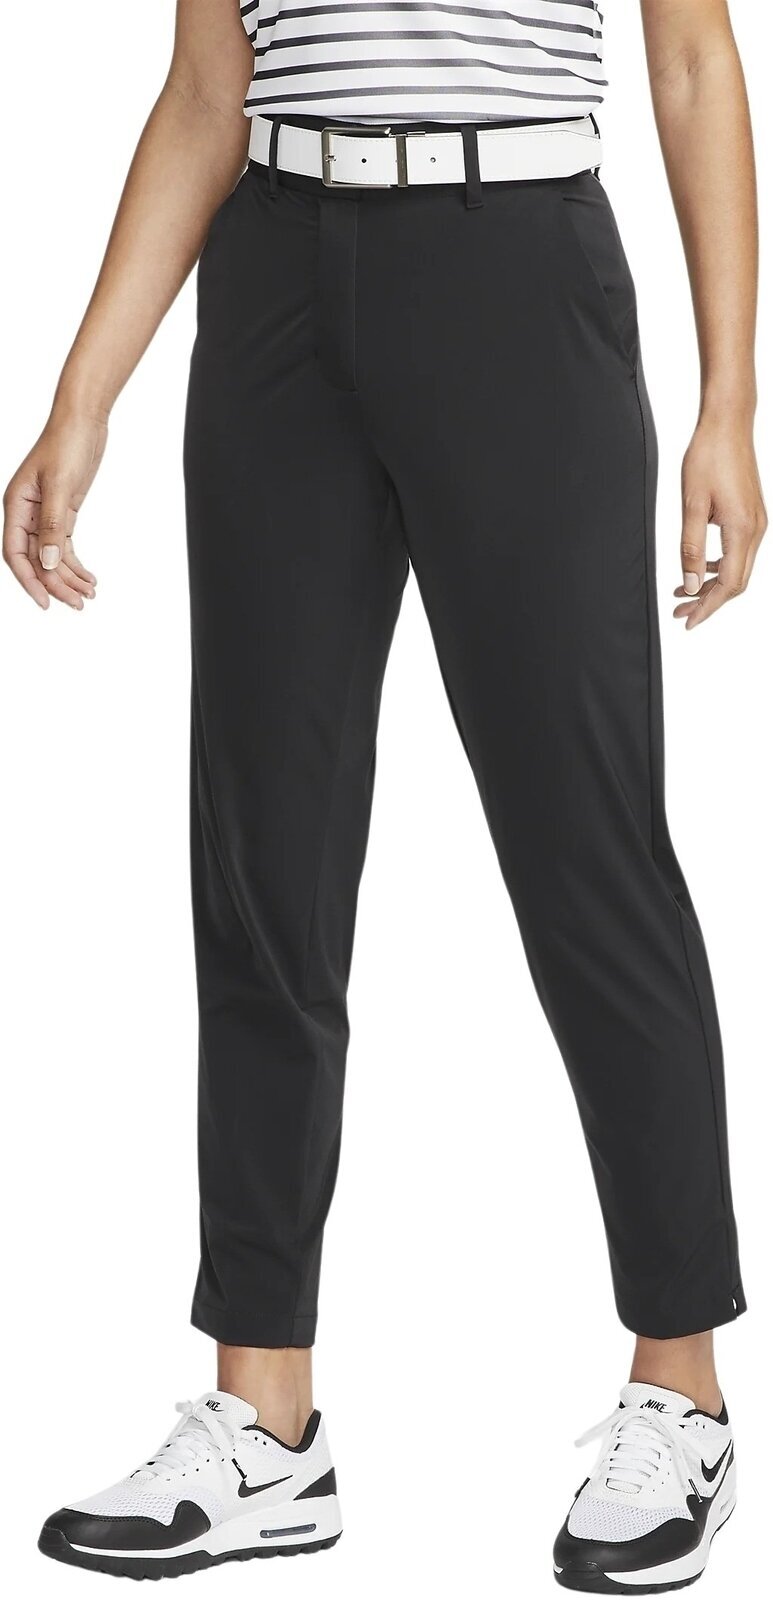 Spodnie Nike Dri-Fit Tour Womens Pants Black/White XS